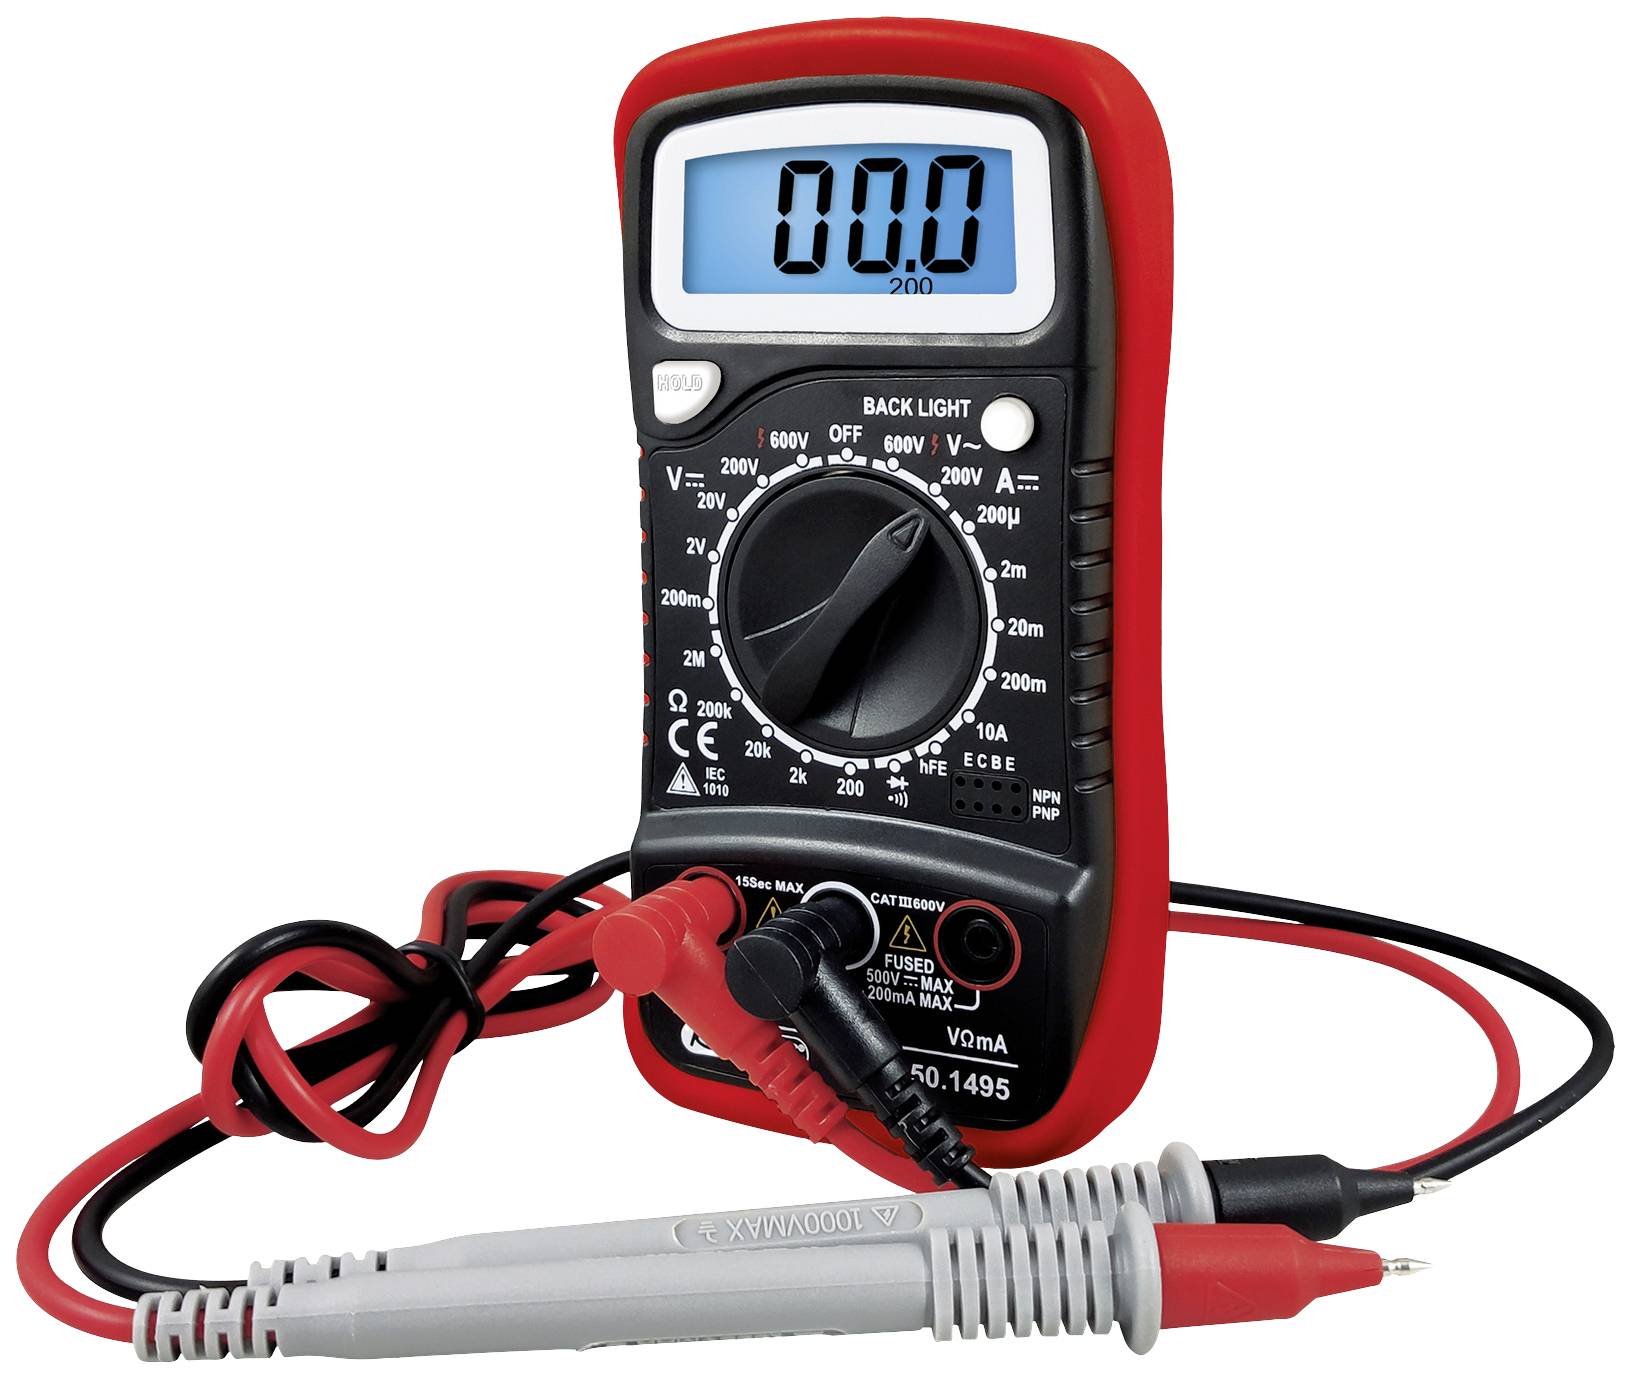 Multimètre numérique BT122900 - Brilliant Tools - Tension max 600V